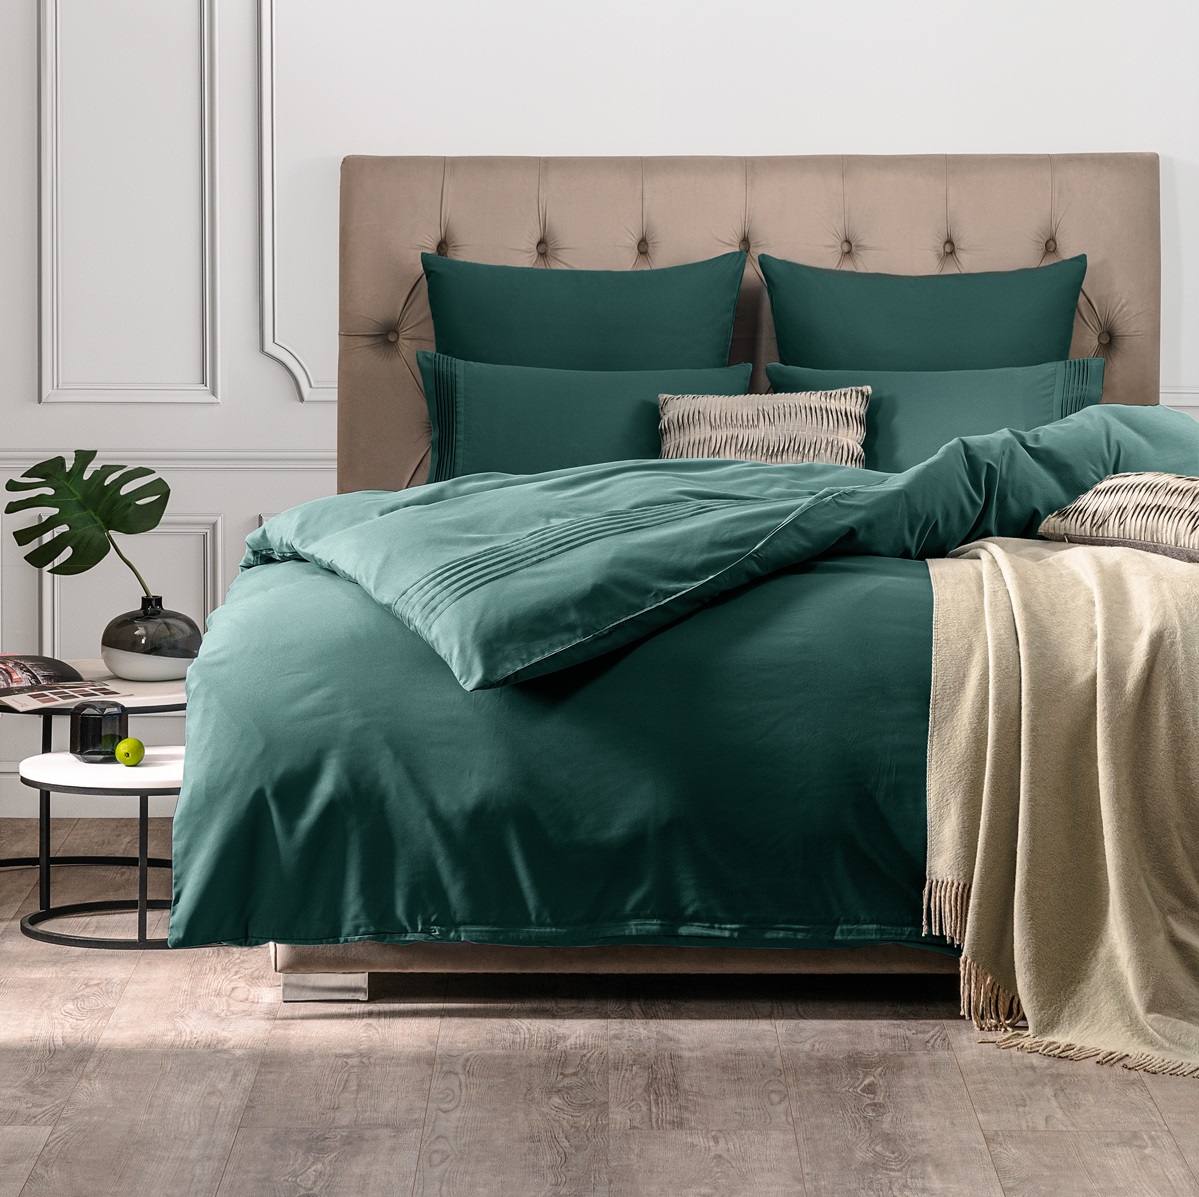 Комплект постельного белья Sleepix Миоко зеленый Полуторный комплект постельного белья la besse сатин светло зелёный полуторный